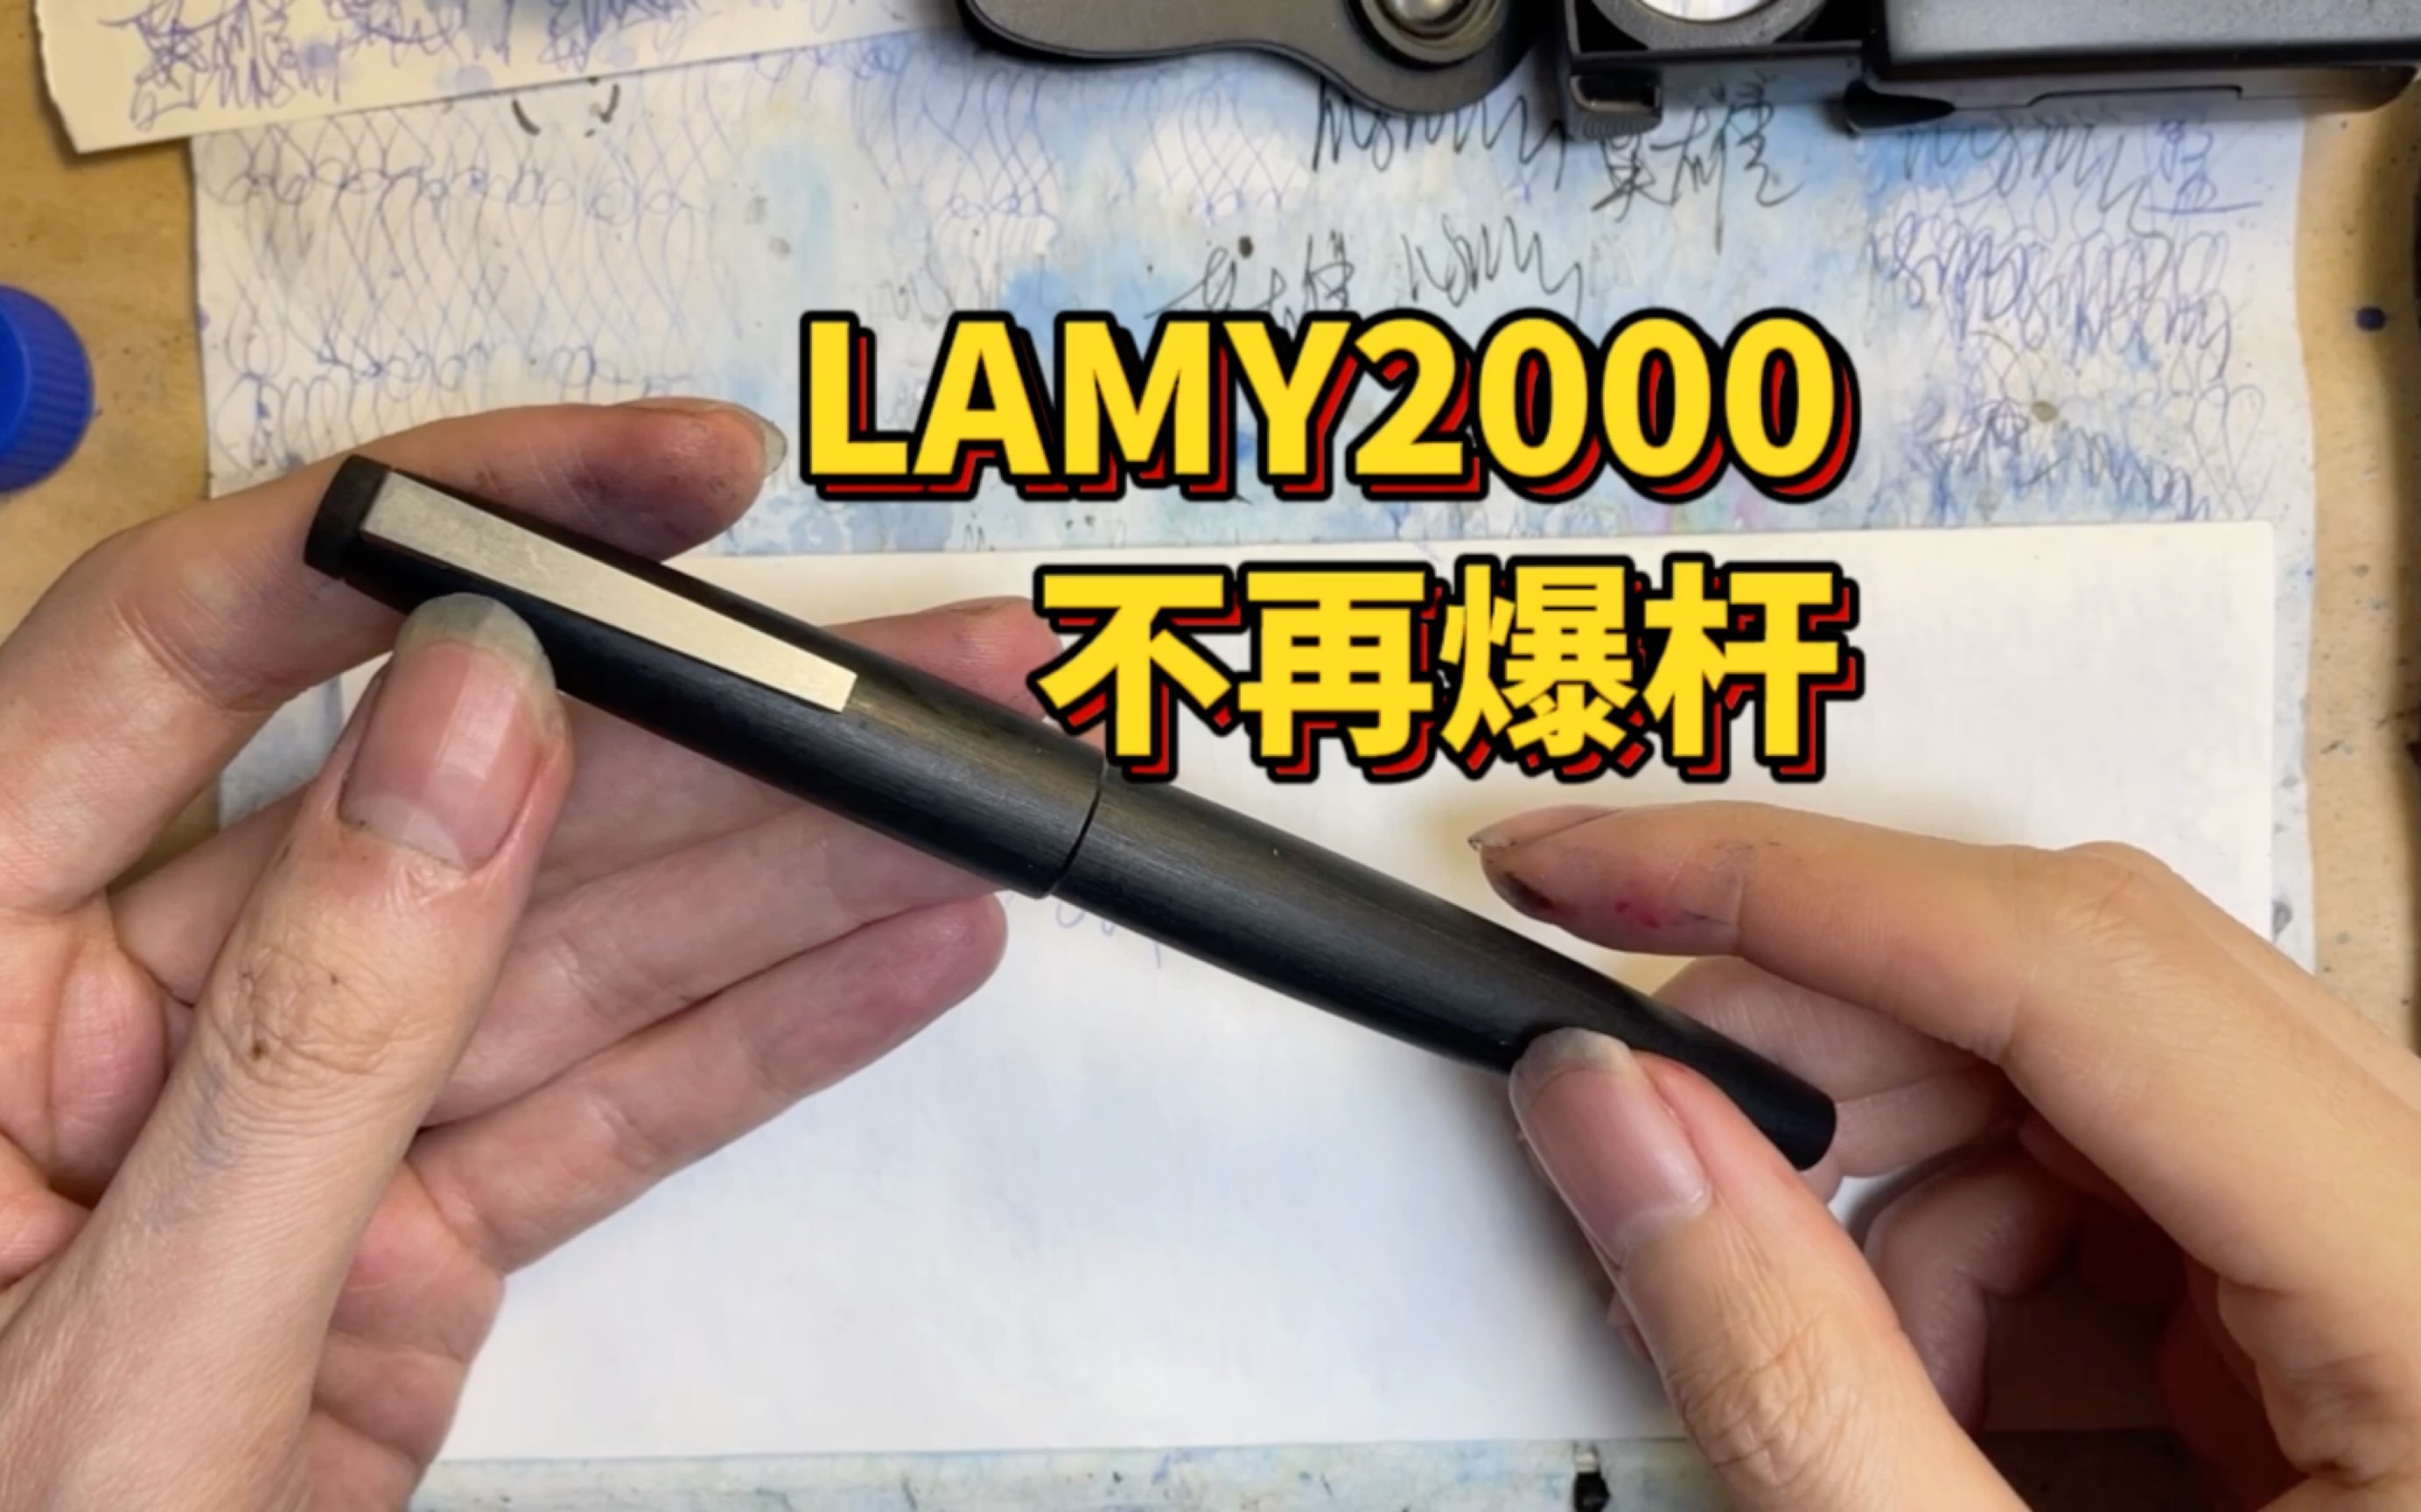 “水枪才是它该有的样子” ：现产LAMY2000还会爆杆吗？